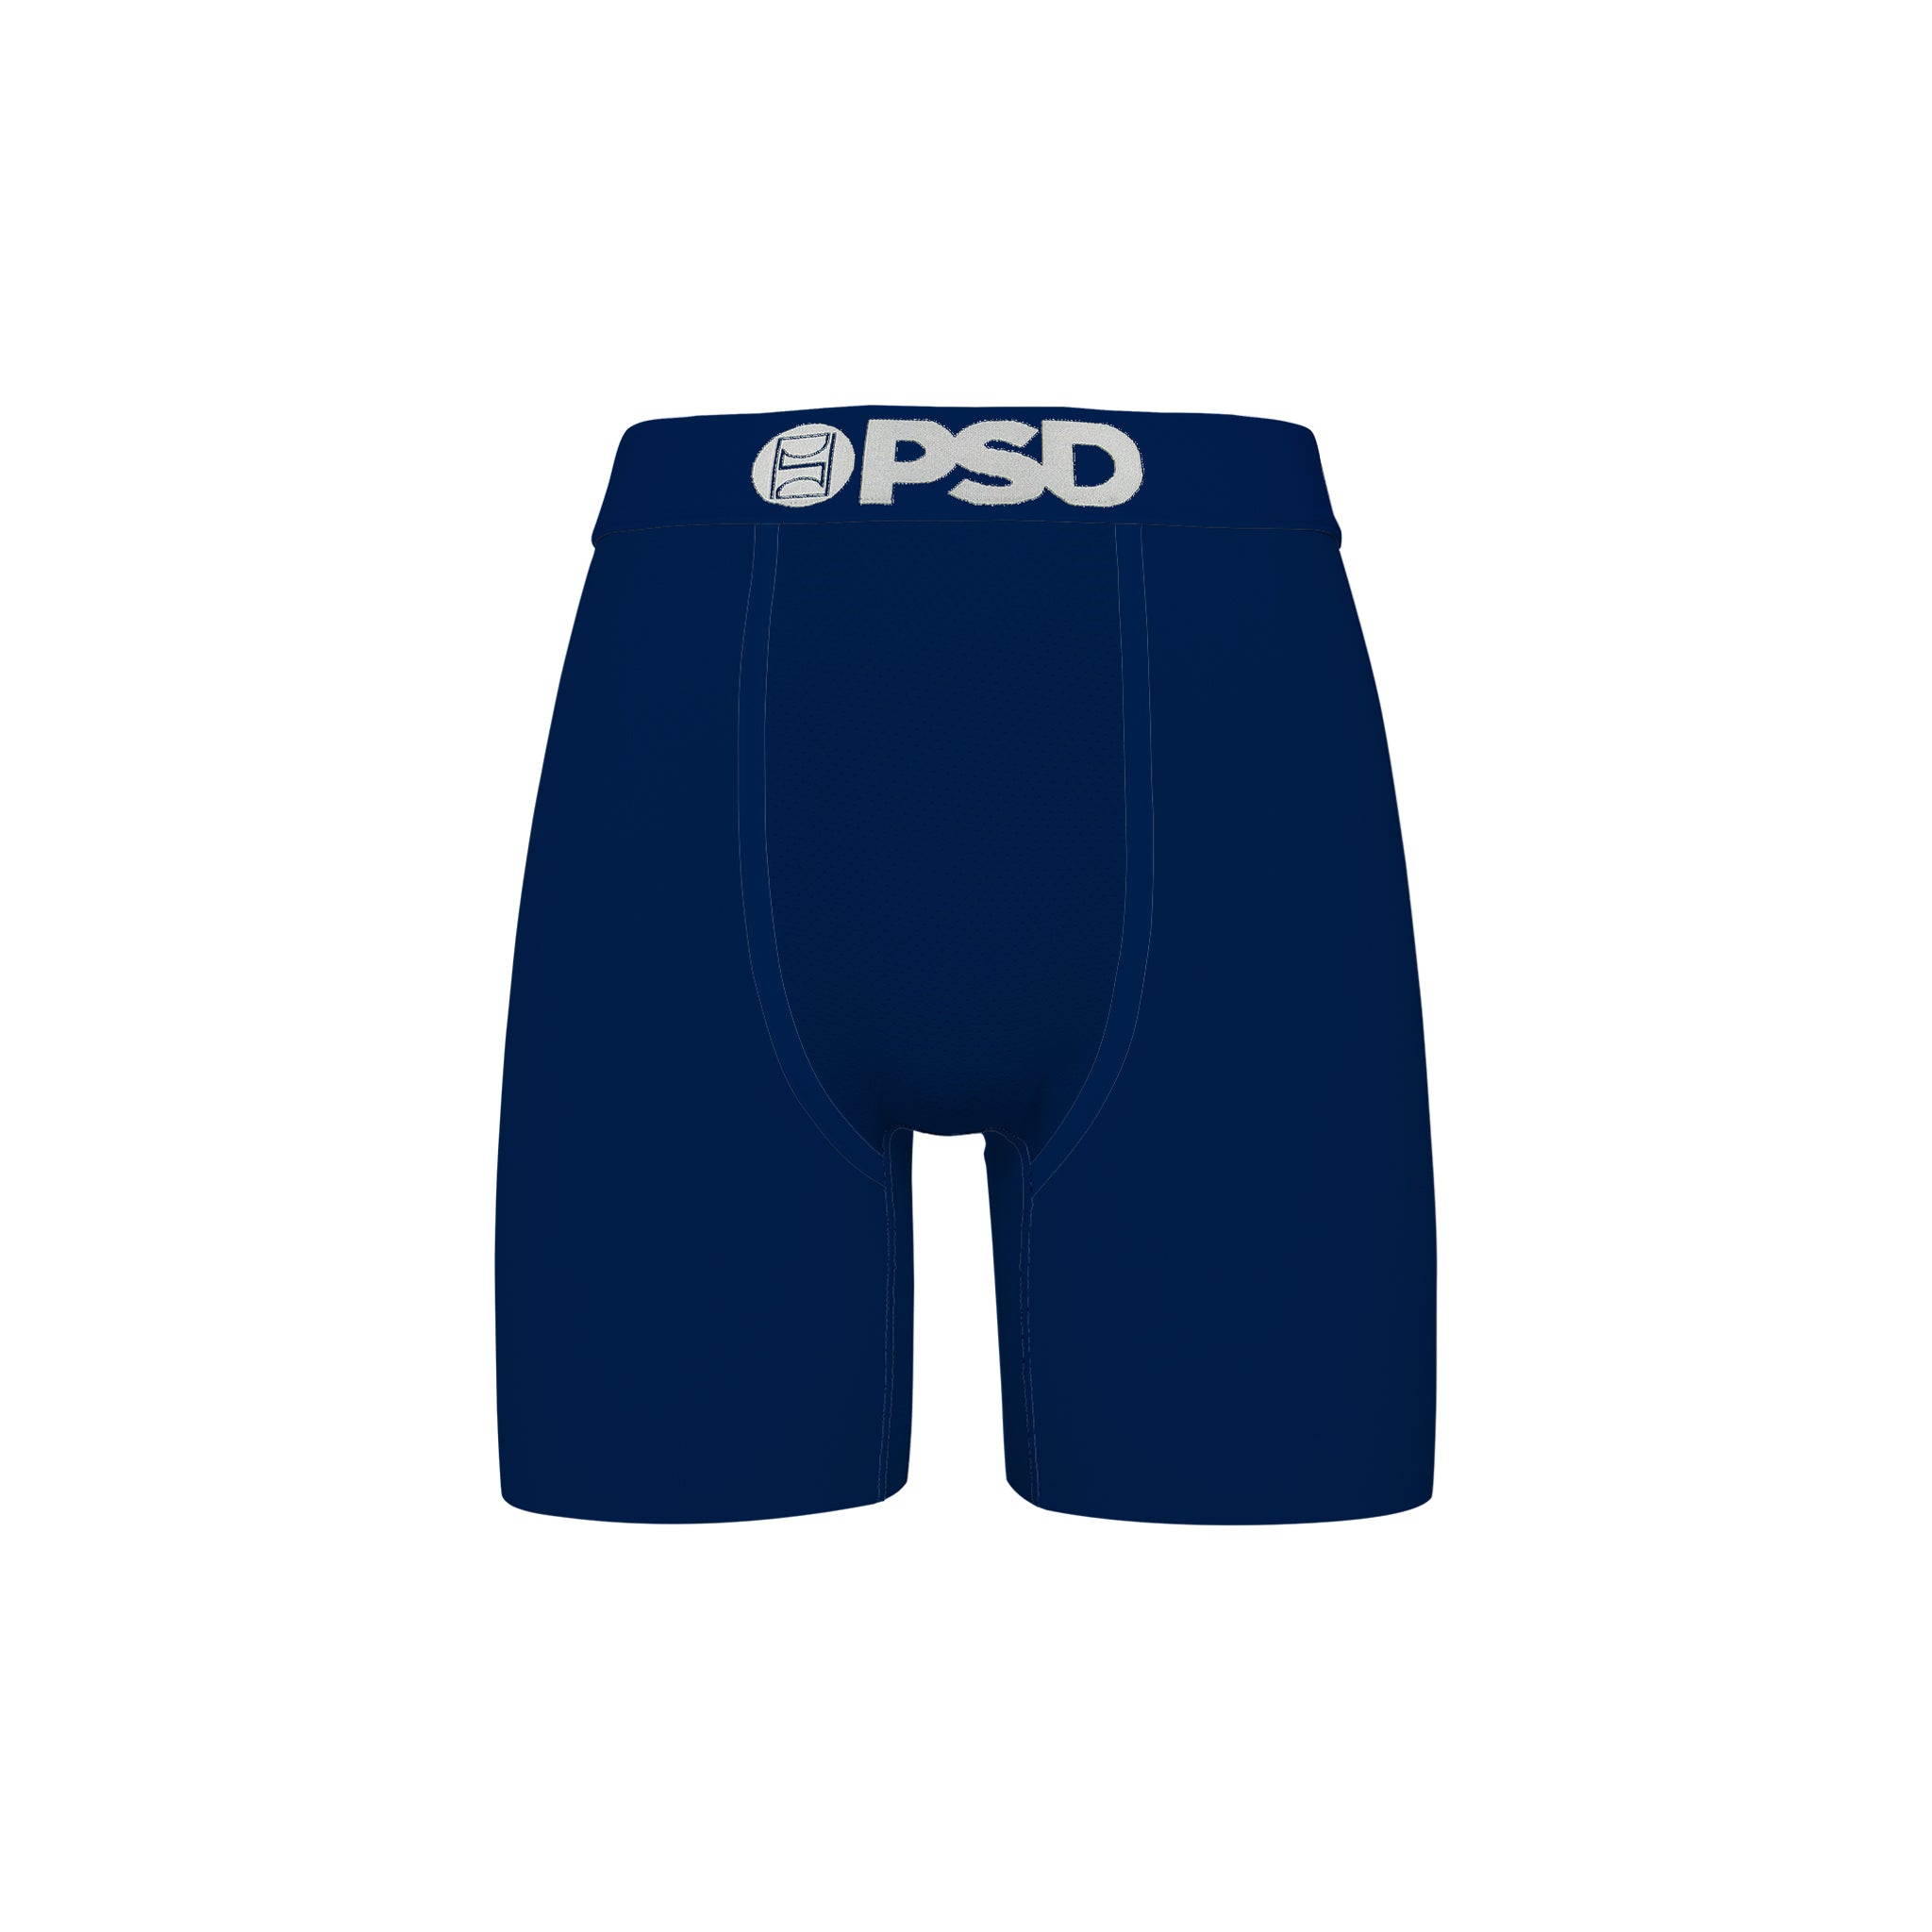 PSD "Navy Cotton" Underwear